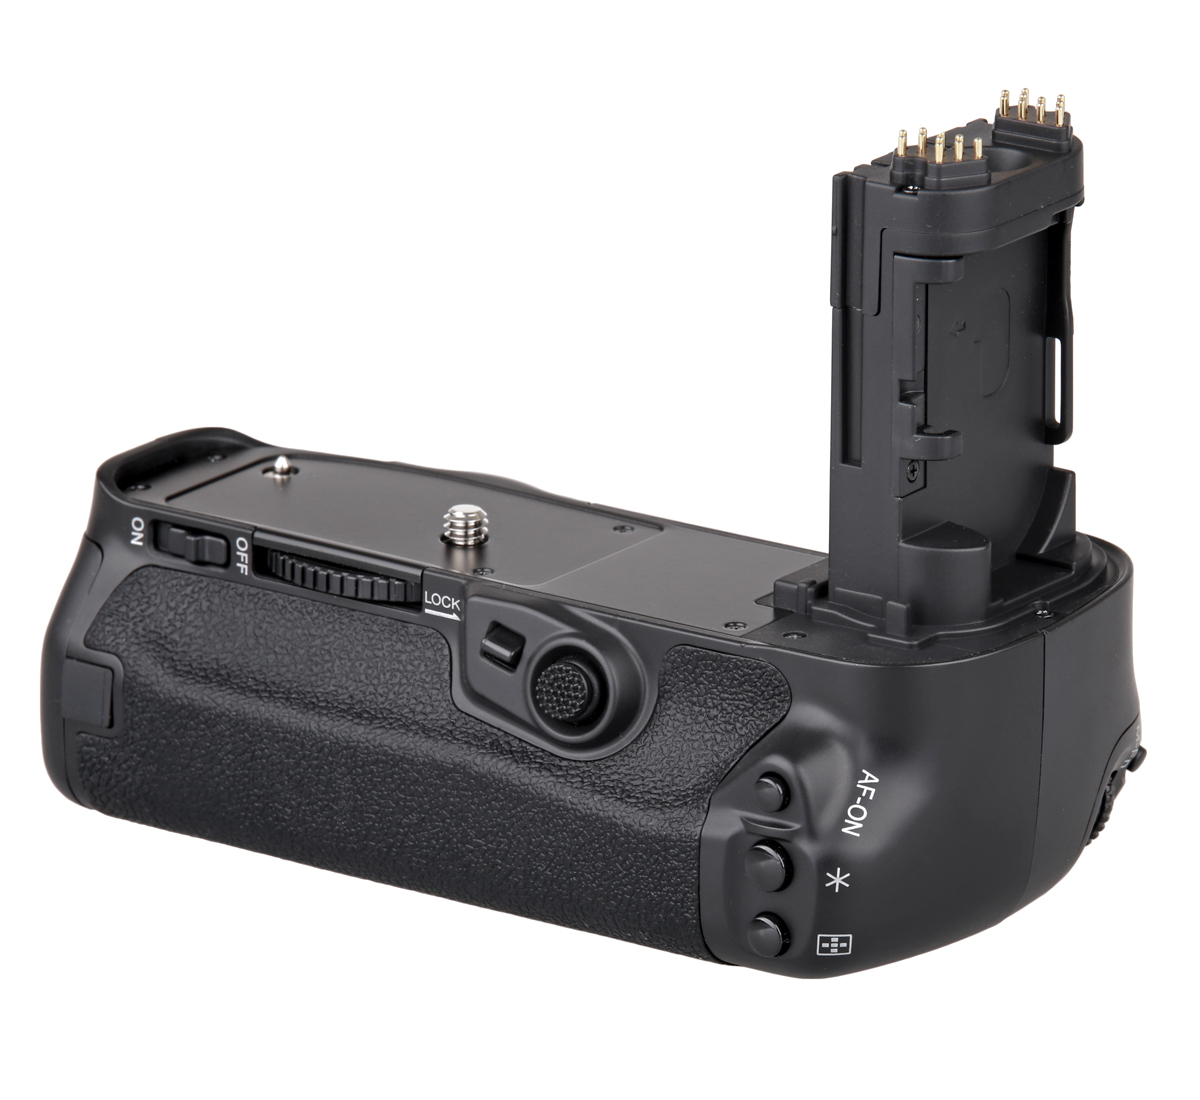 Meike Batteriegriff Set MK-5D4 für Canon EOS 5D Mark IV wie BG-E20 + 2x ayex LP-E6N Akku